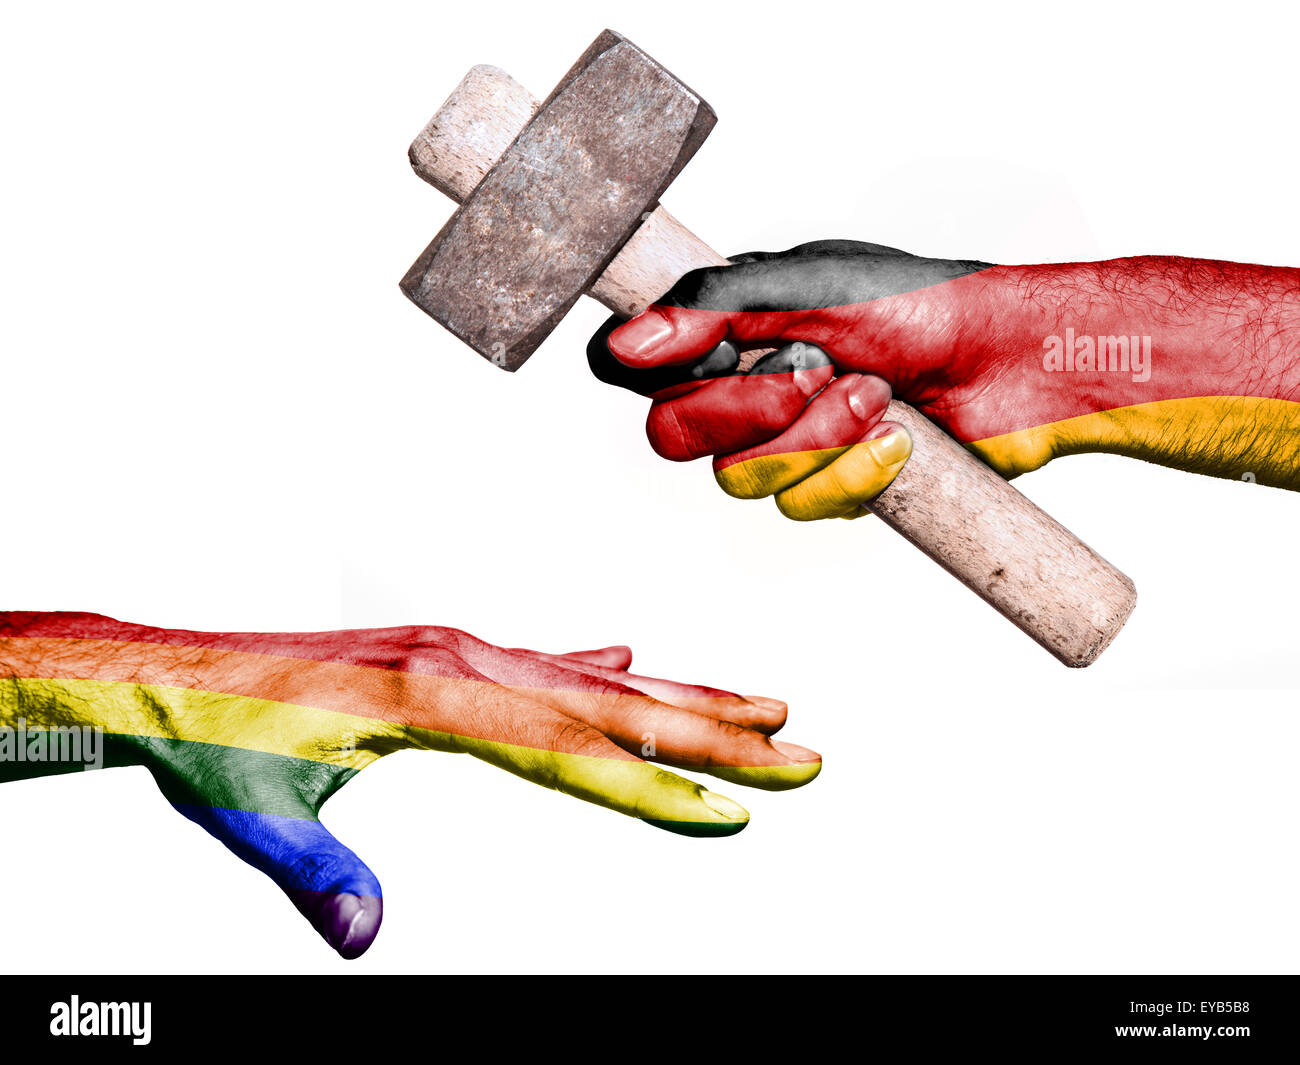 Pavillon de l'Allemagne surimprimées sur une main tenant un marteau lourd frappe une part représentant la paix. Image conceptuelle pour politic Banque D'Images